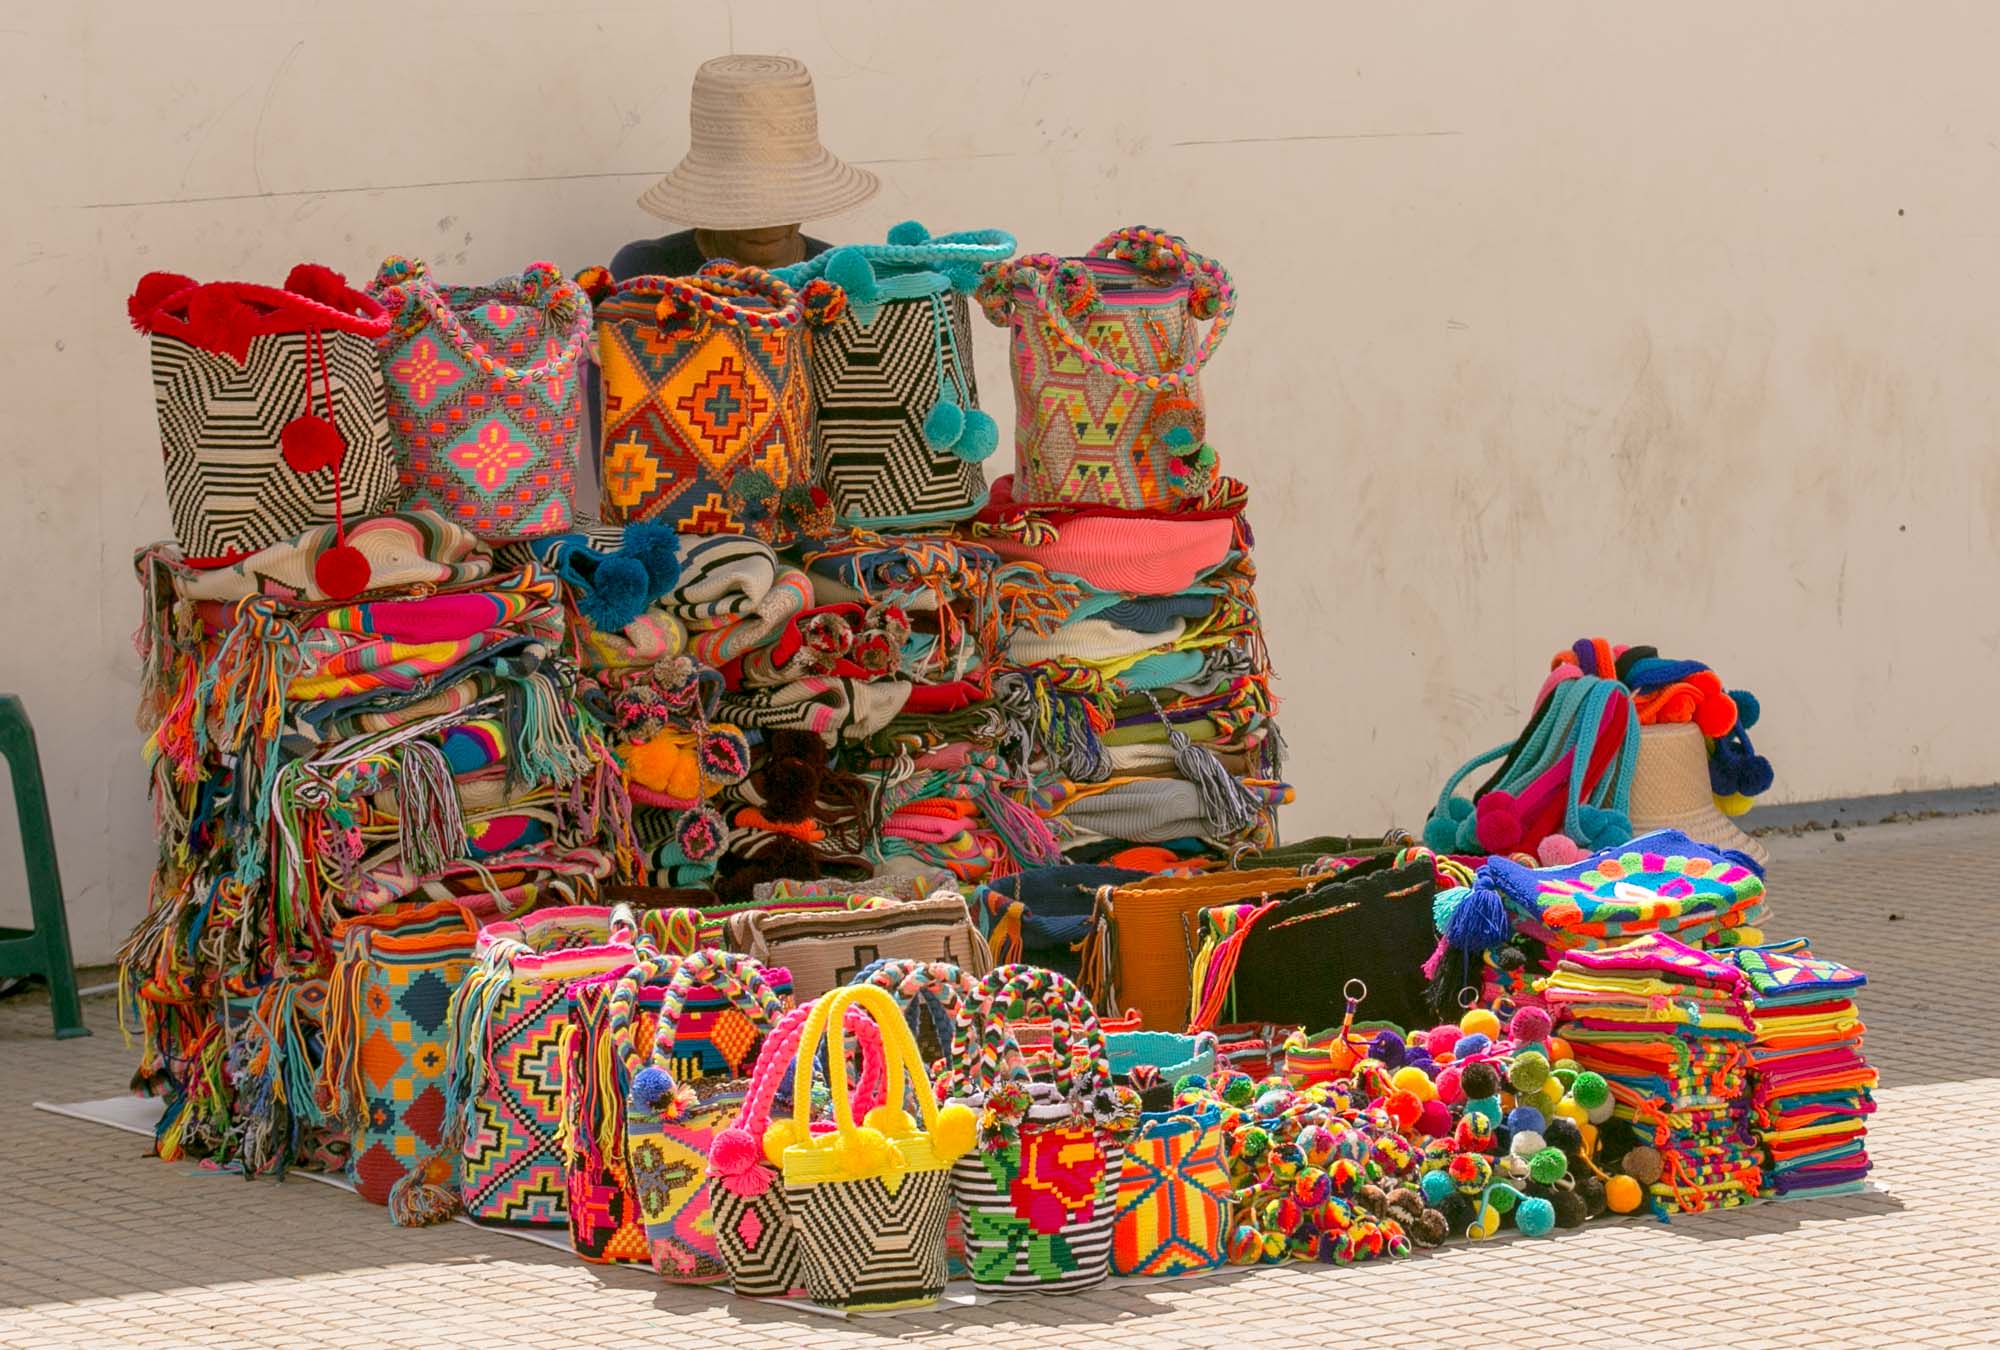 Textiles at Cartagena's Plaza de la Proclamacion